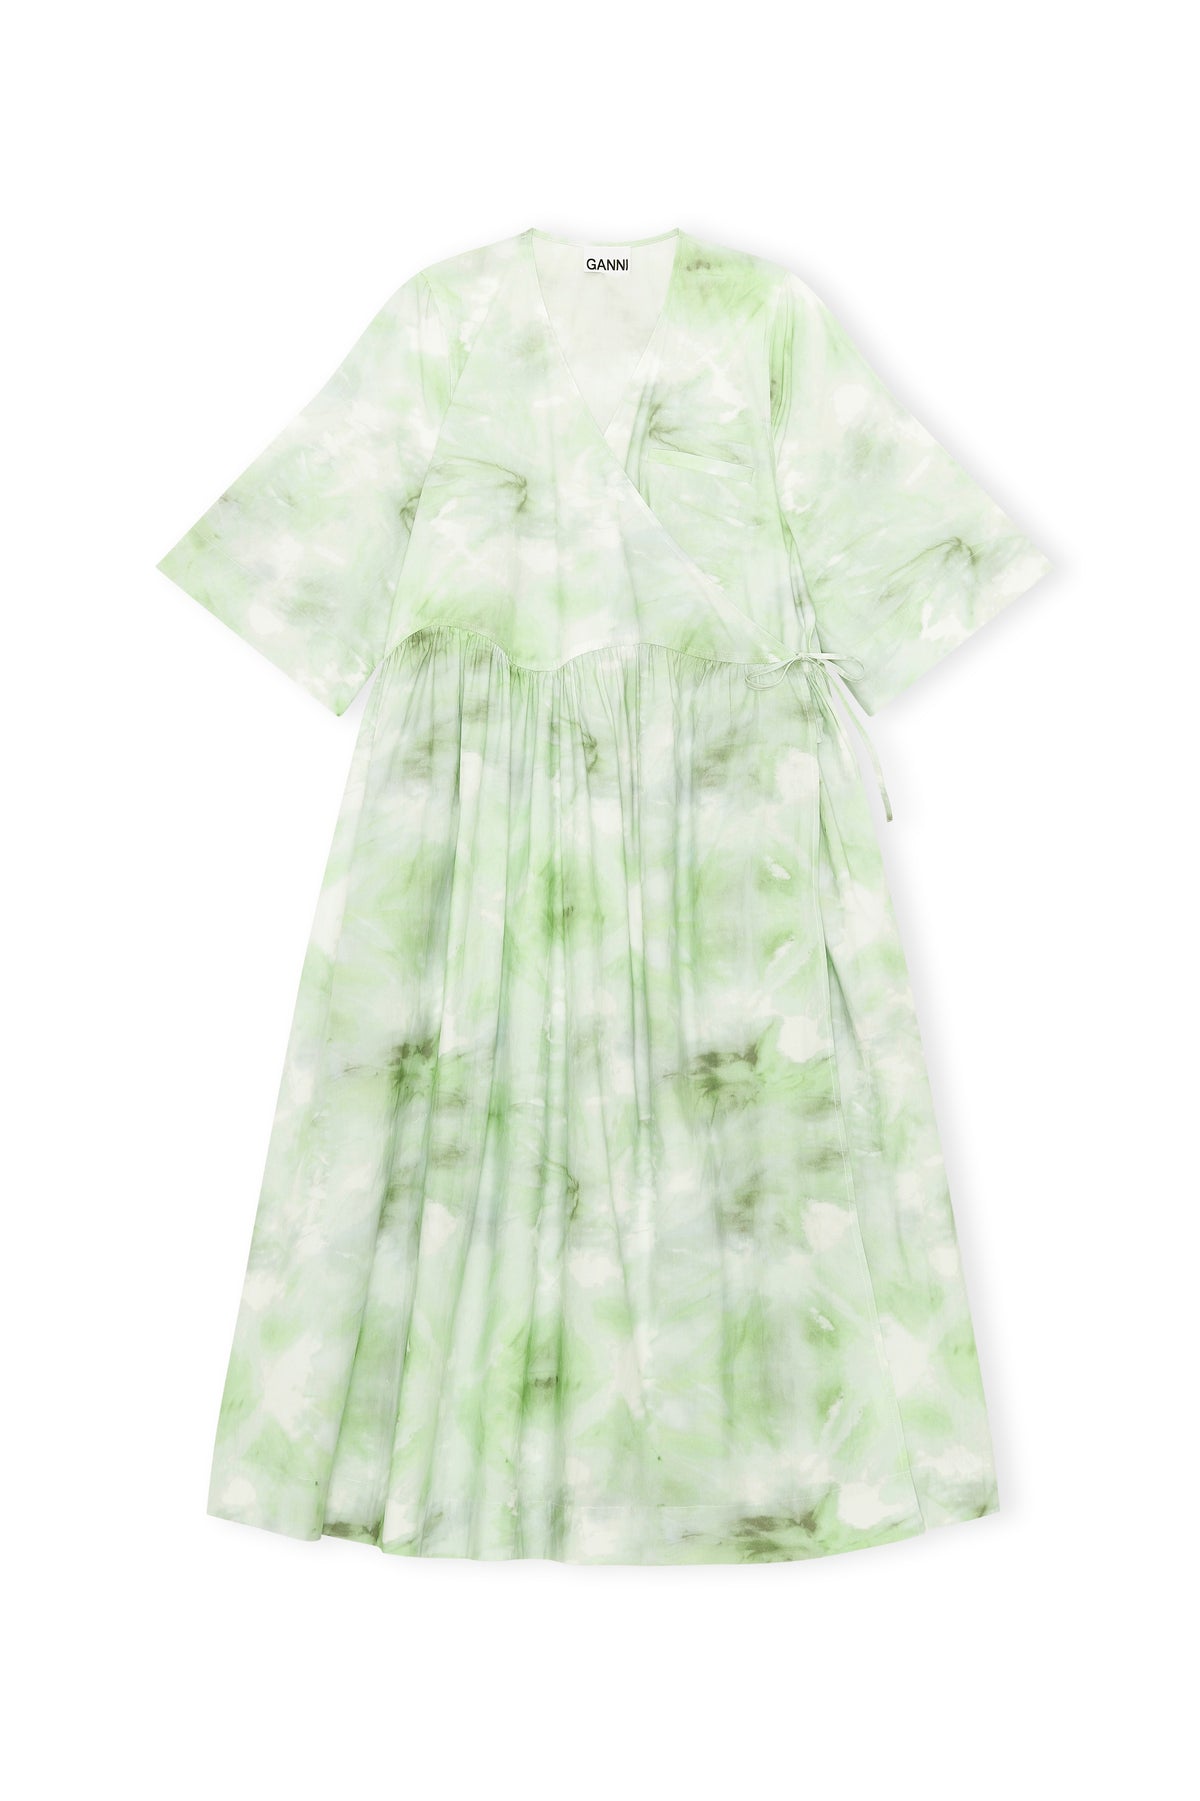 GANNI F6336 Cotton Poplin Wrap Dress in Kelly Green